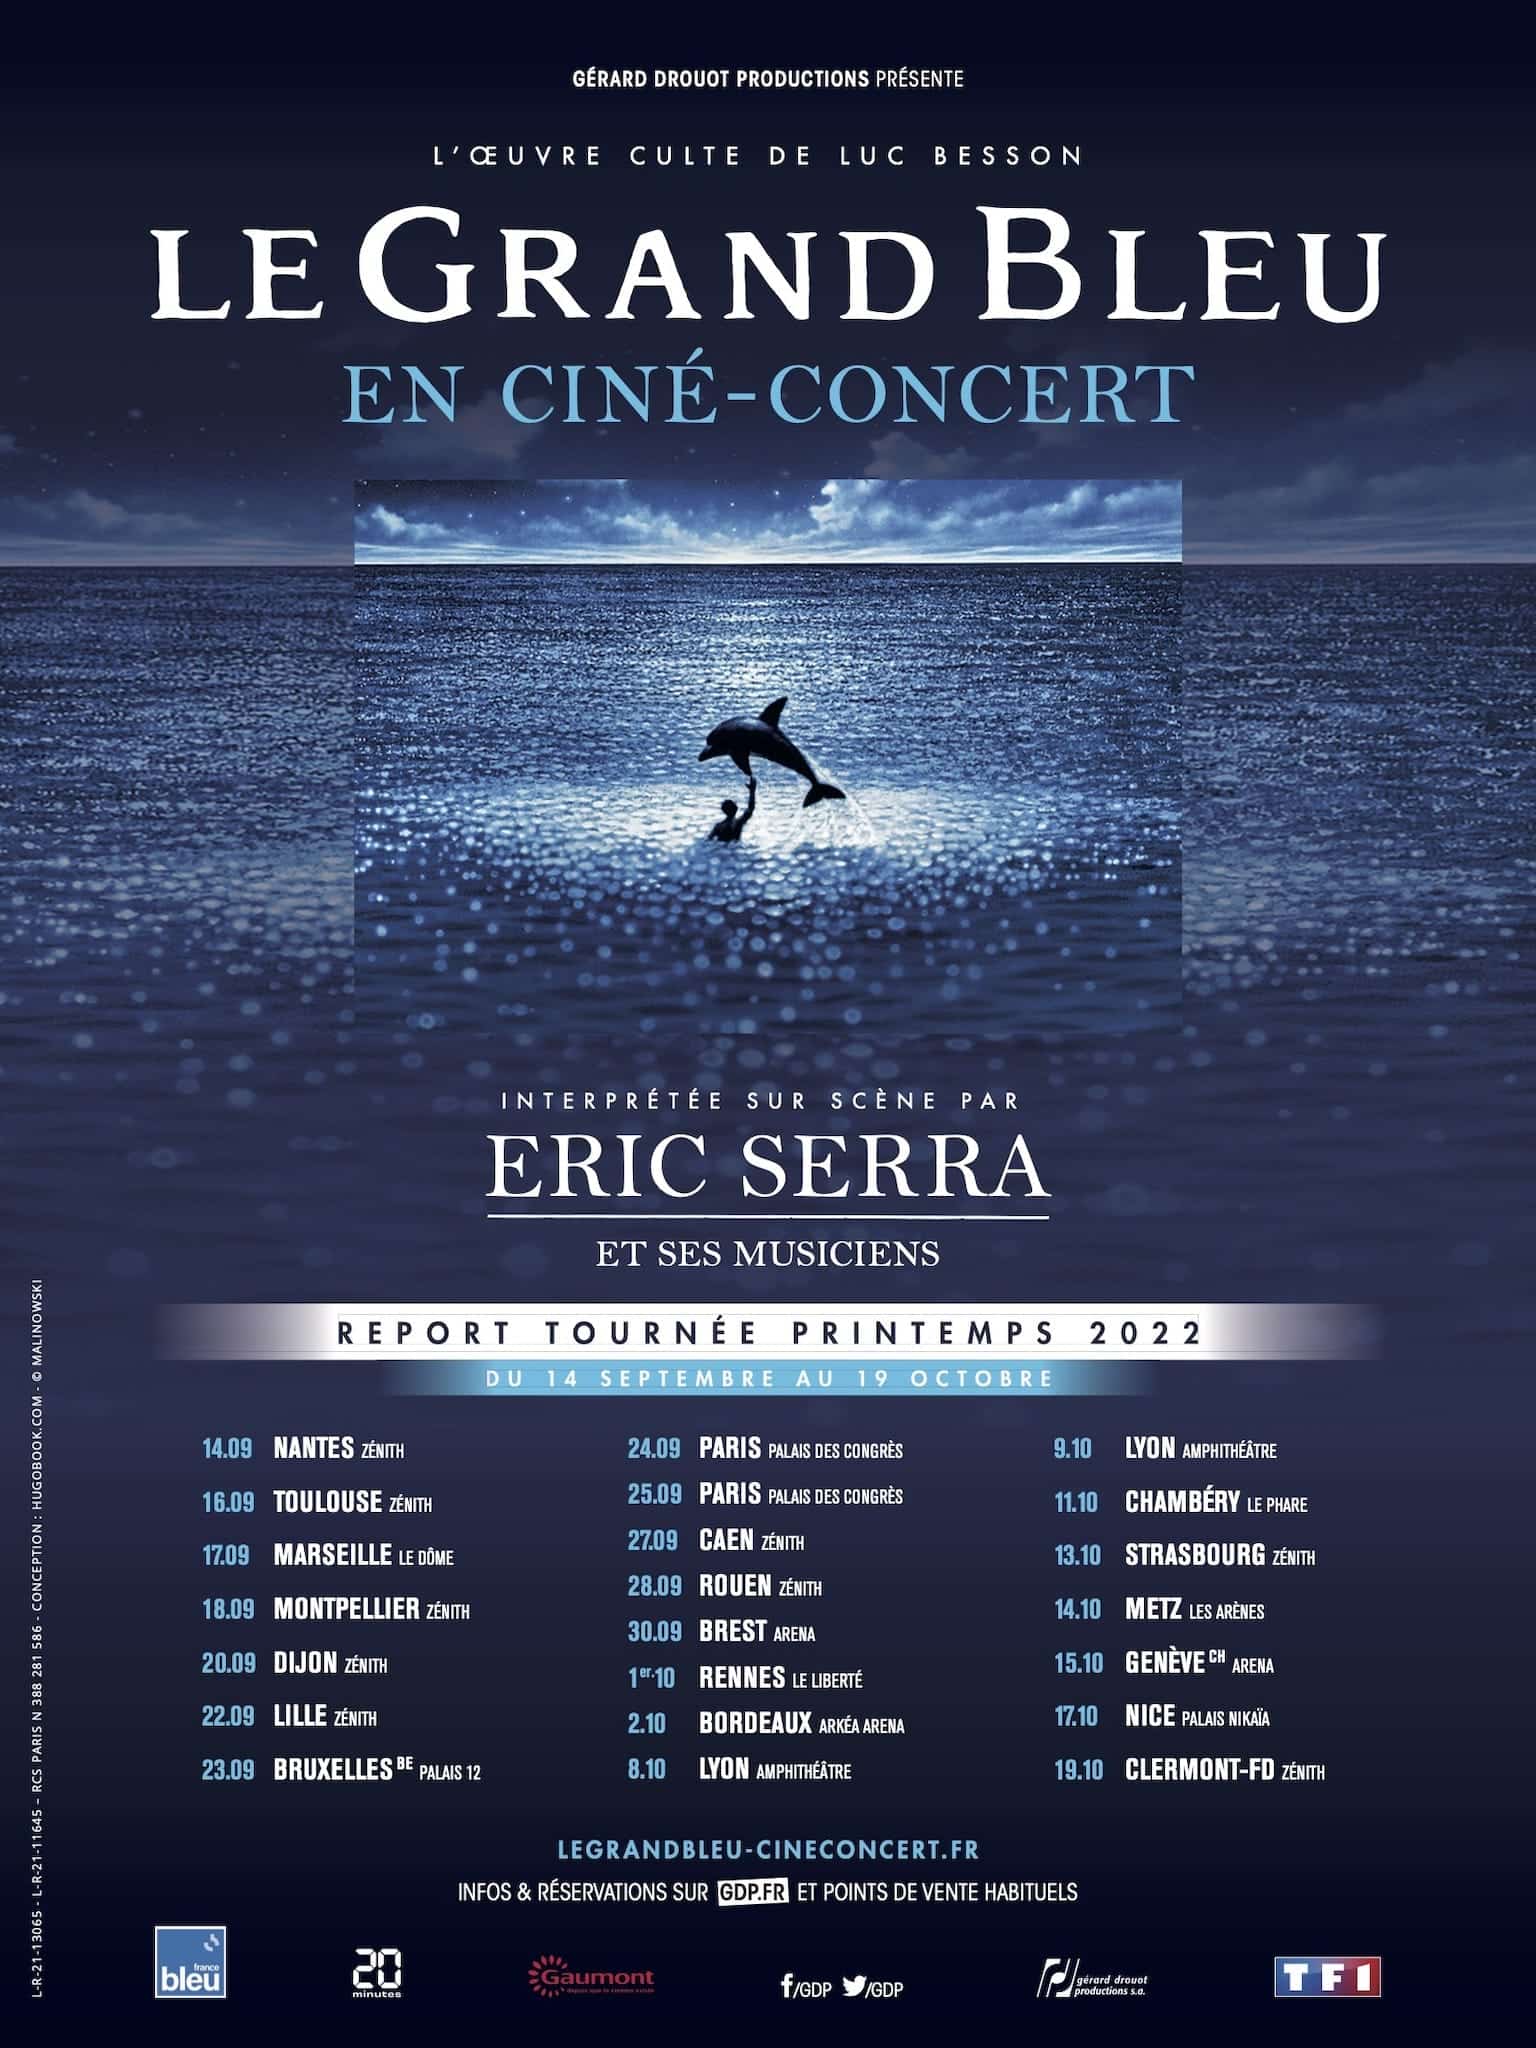 Le Grand Bleu en ciné-concert affiche tournée 2022 villes image cinéma